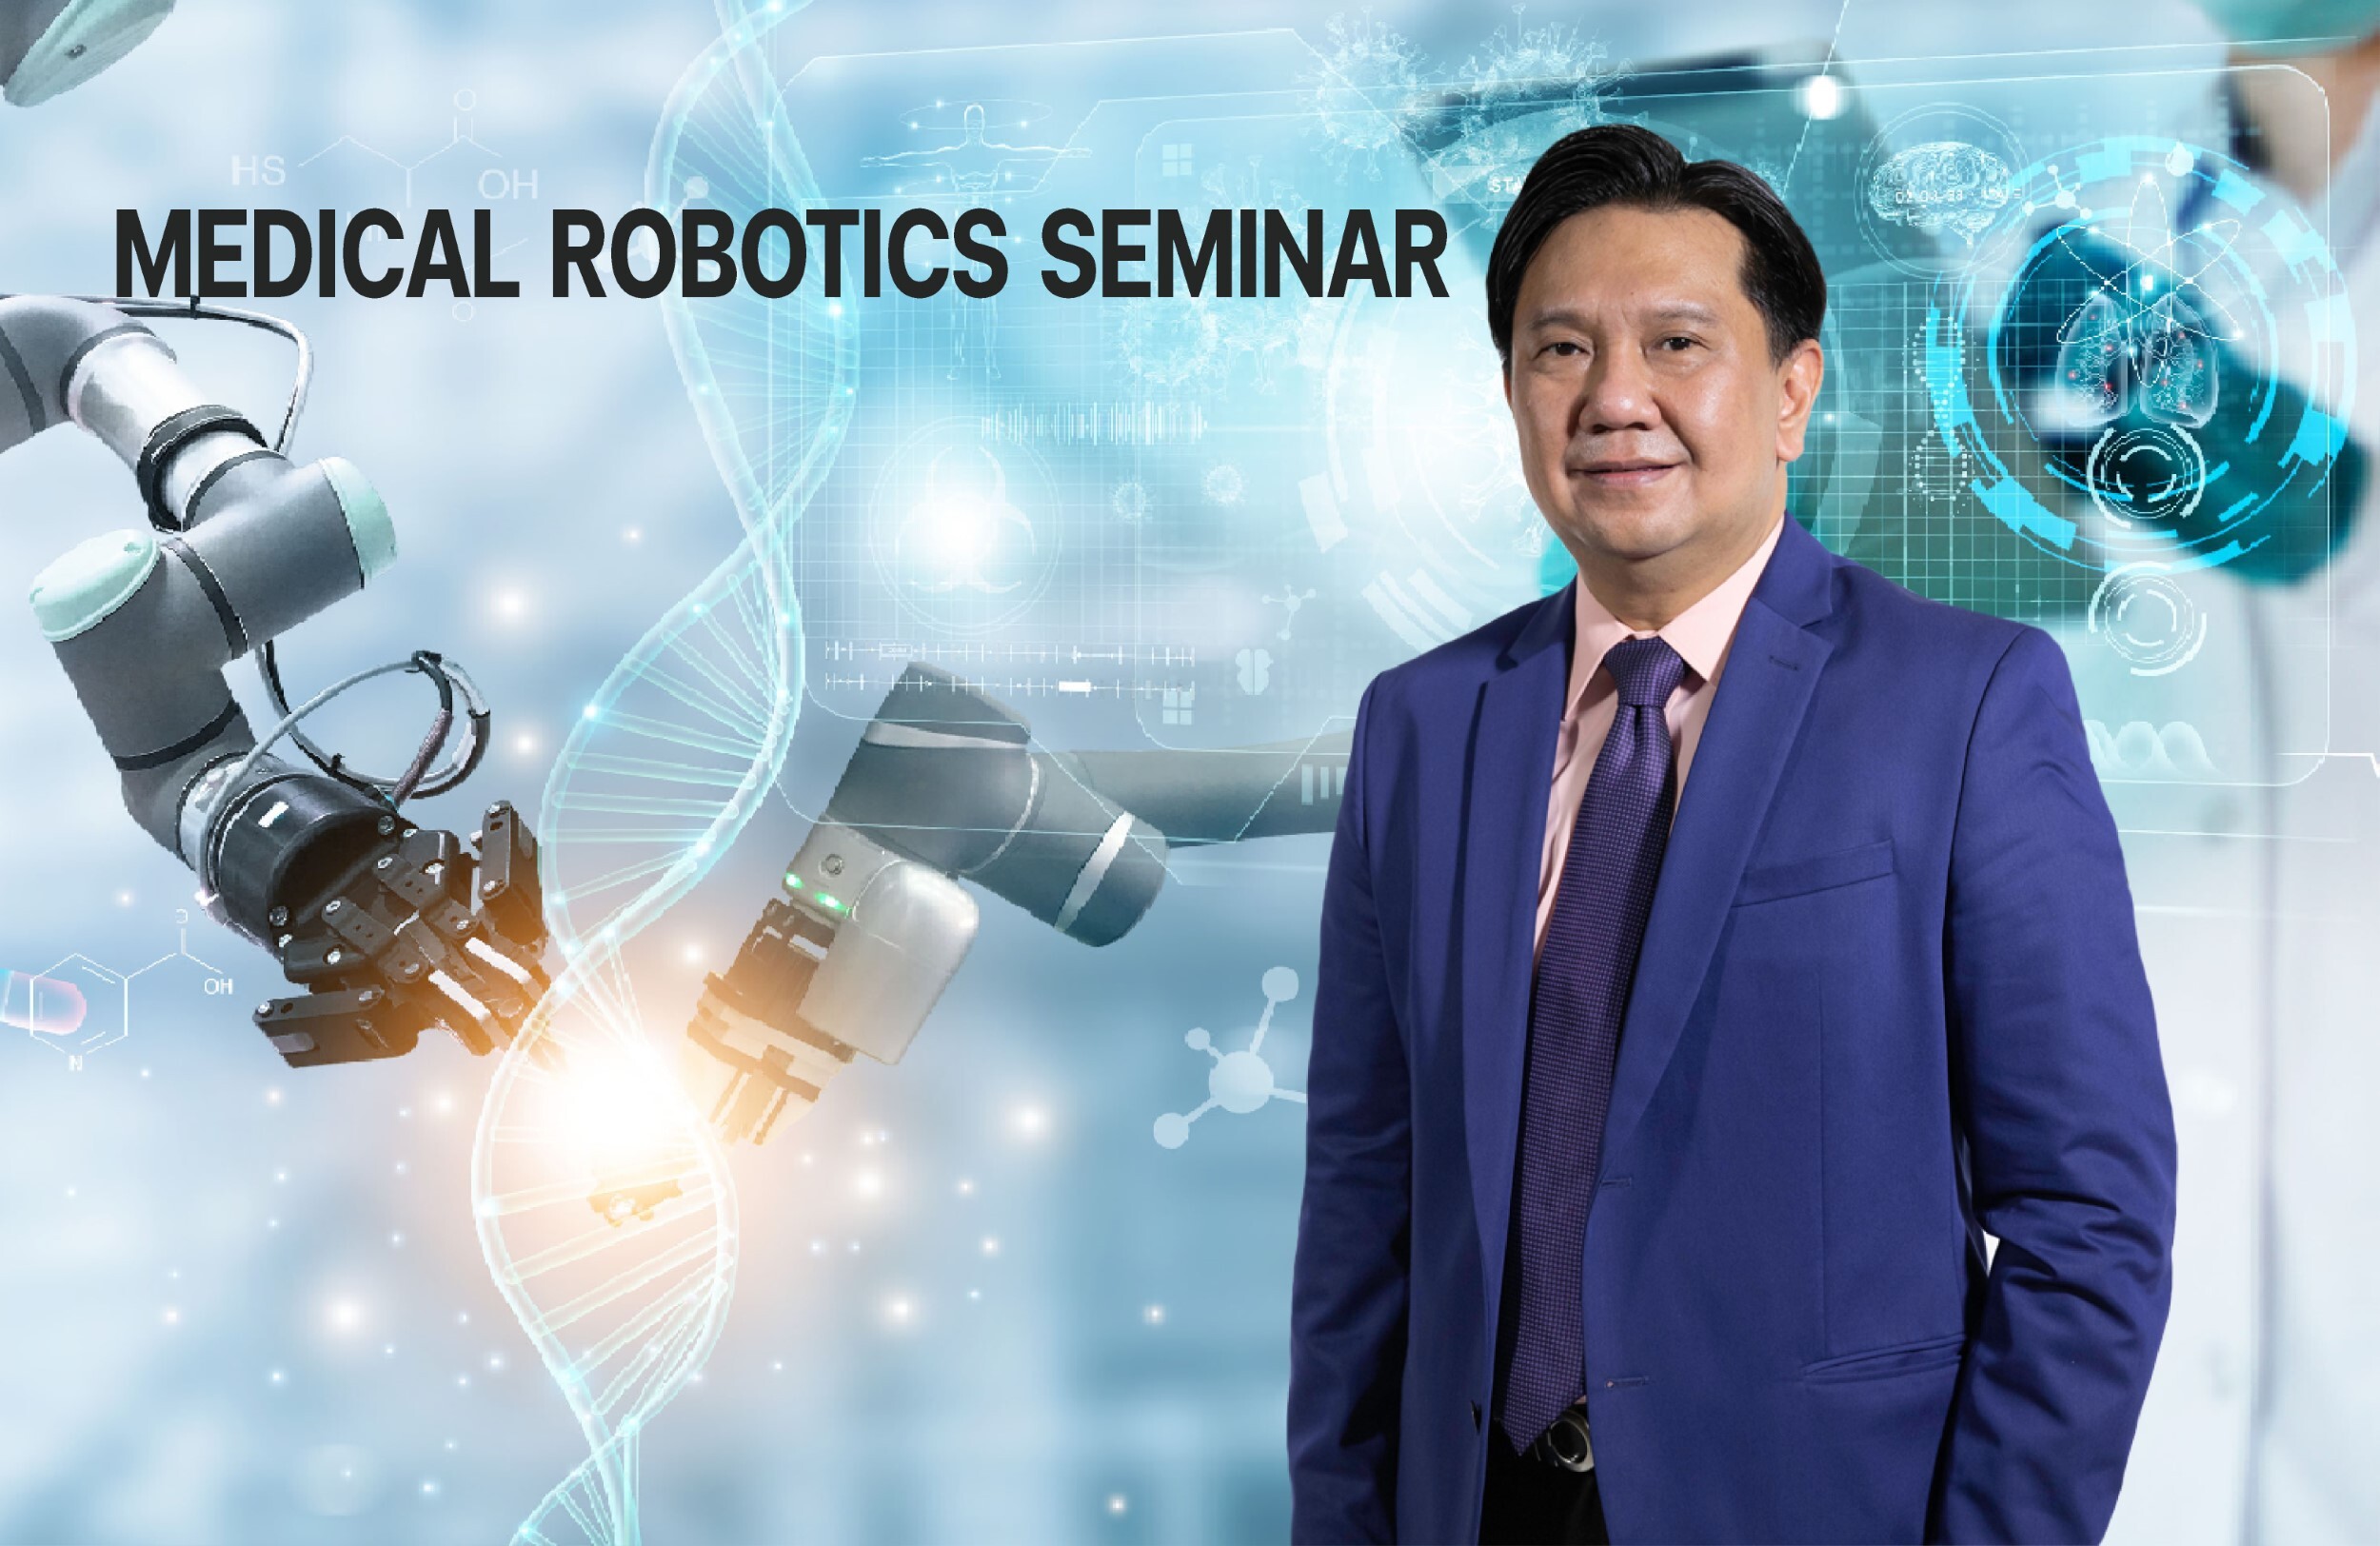 วิศวะมหิดล เปิดสัมมนา "หุ่นยนต์ทางการแพทย์" สานพลังจัดตั้ง "สมาคมวิชาการหุ่นยนต์และ AI ทางการแพทย์ประเทศไทย"